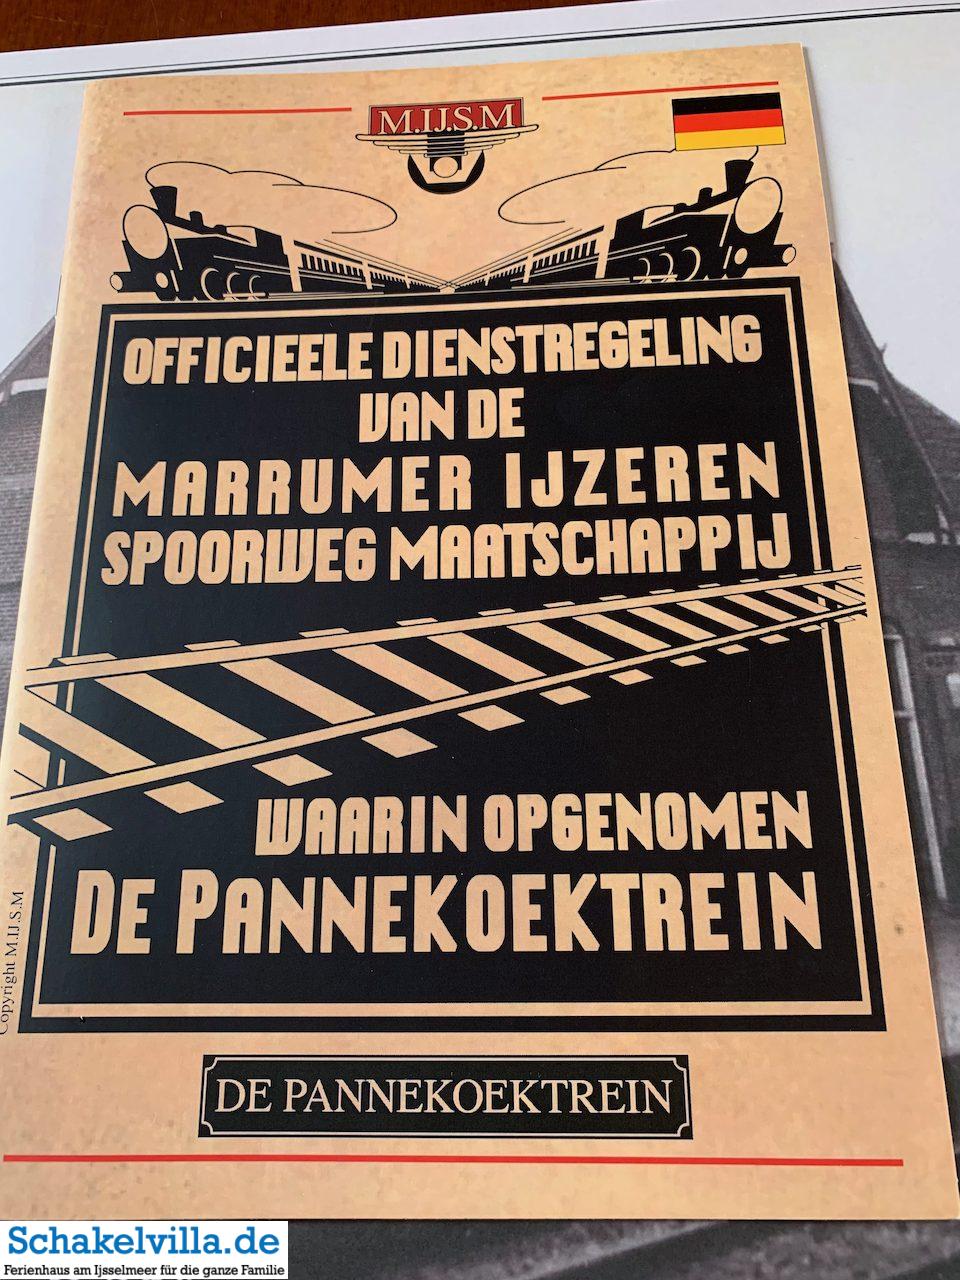 Dienstregelung - Pannekoektrein Marrum - ein Pfannkuchenzug - Schakelvilla Ferienhaus mit Sauna in Makkum am IJsselmeer